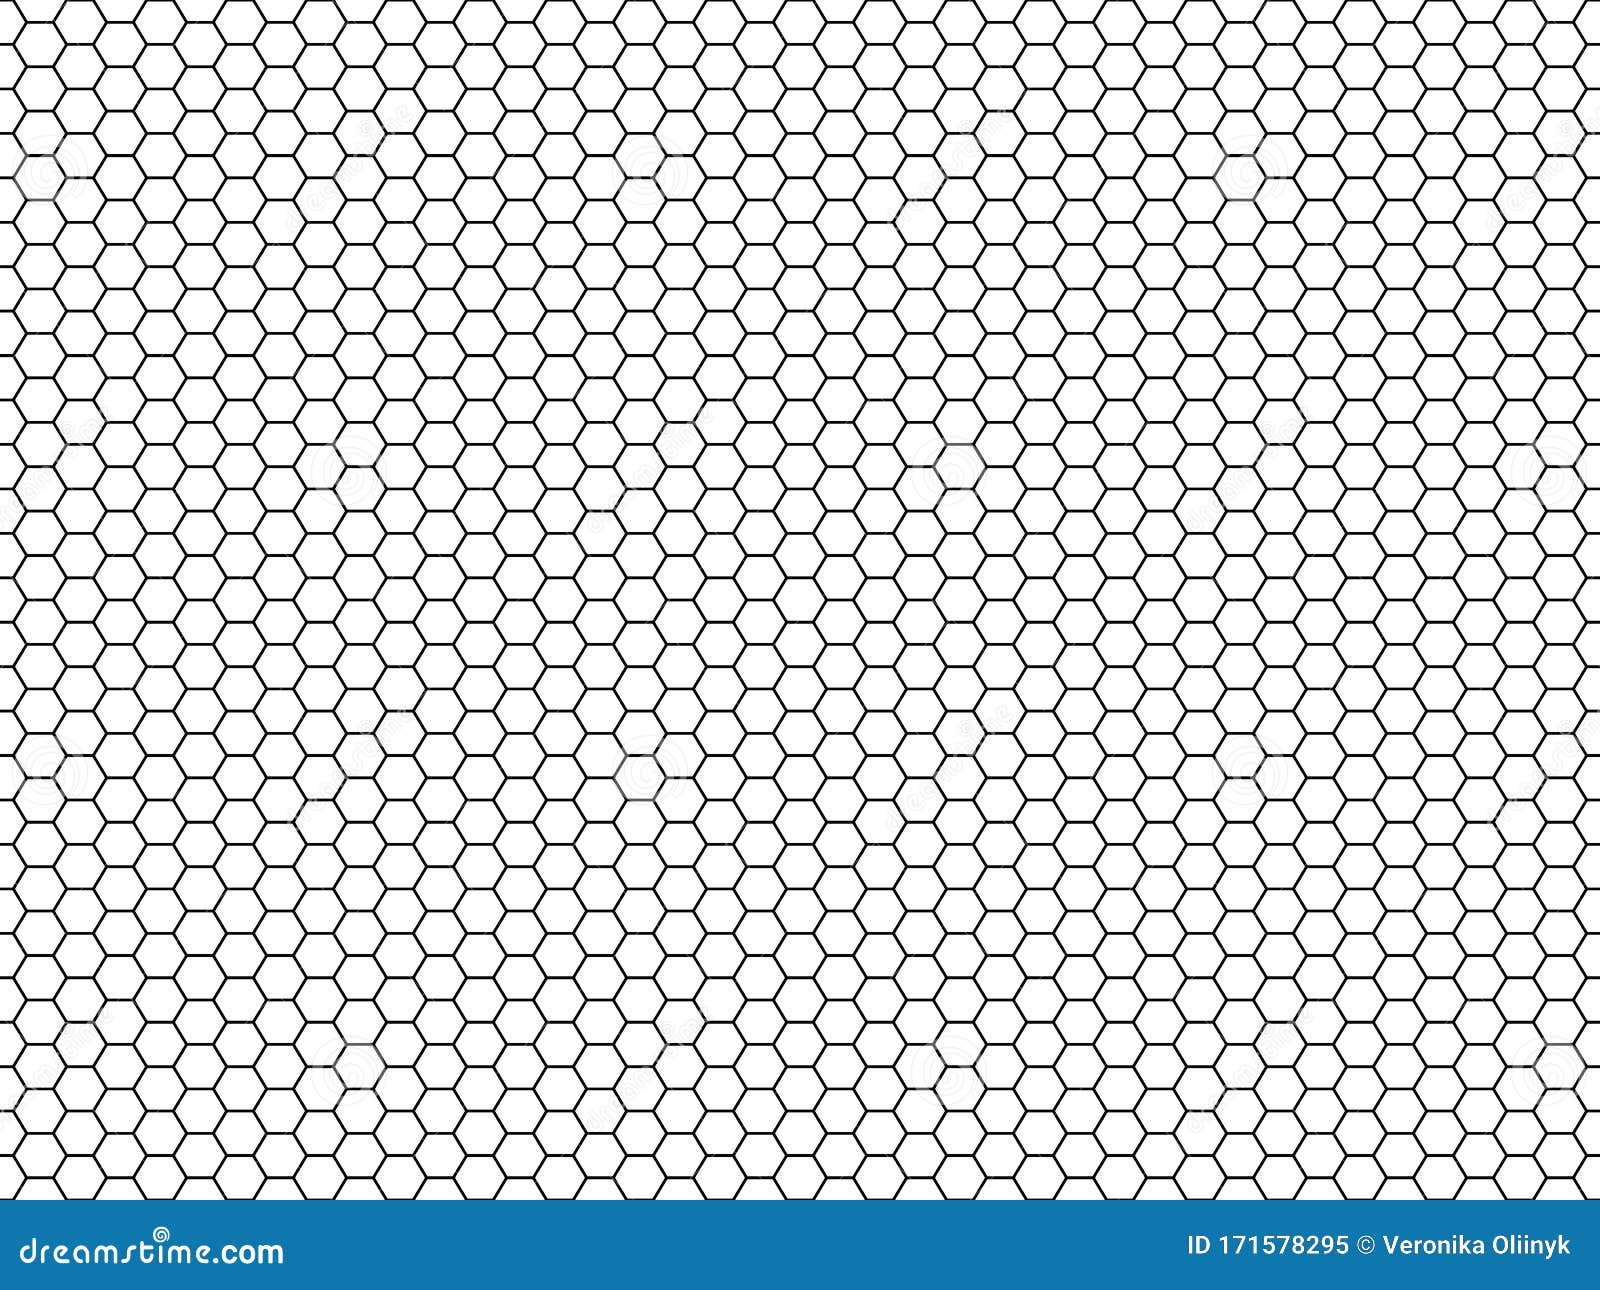 Hexagon Honeycomb Pattern. Honey Hexagonal Backdrop, Mosaic Cells ...